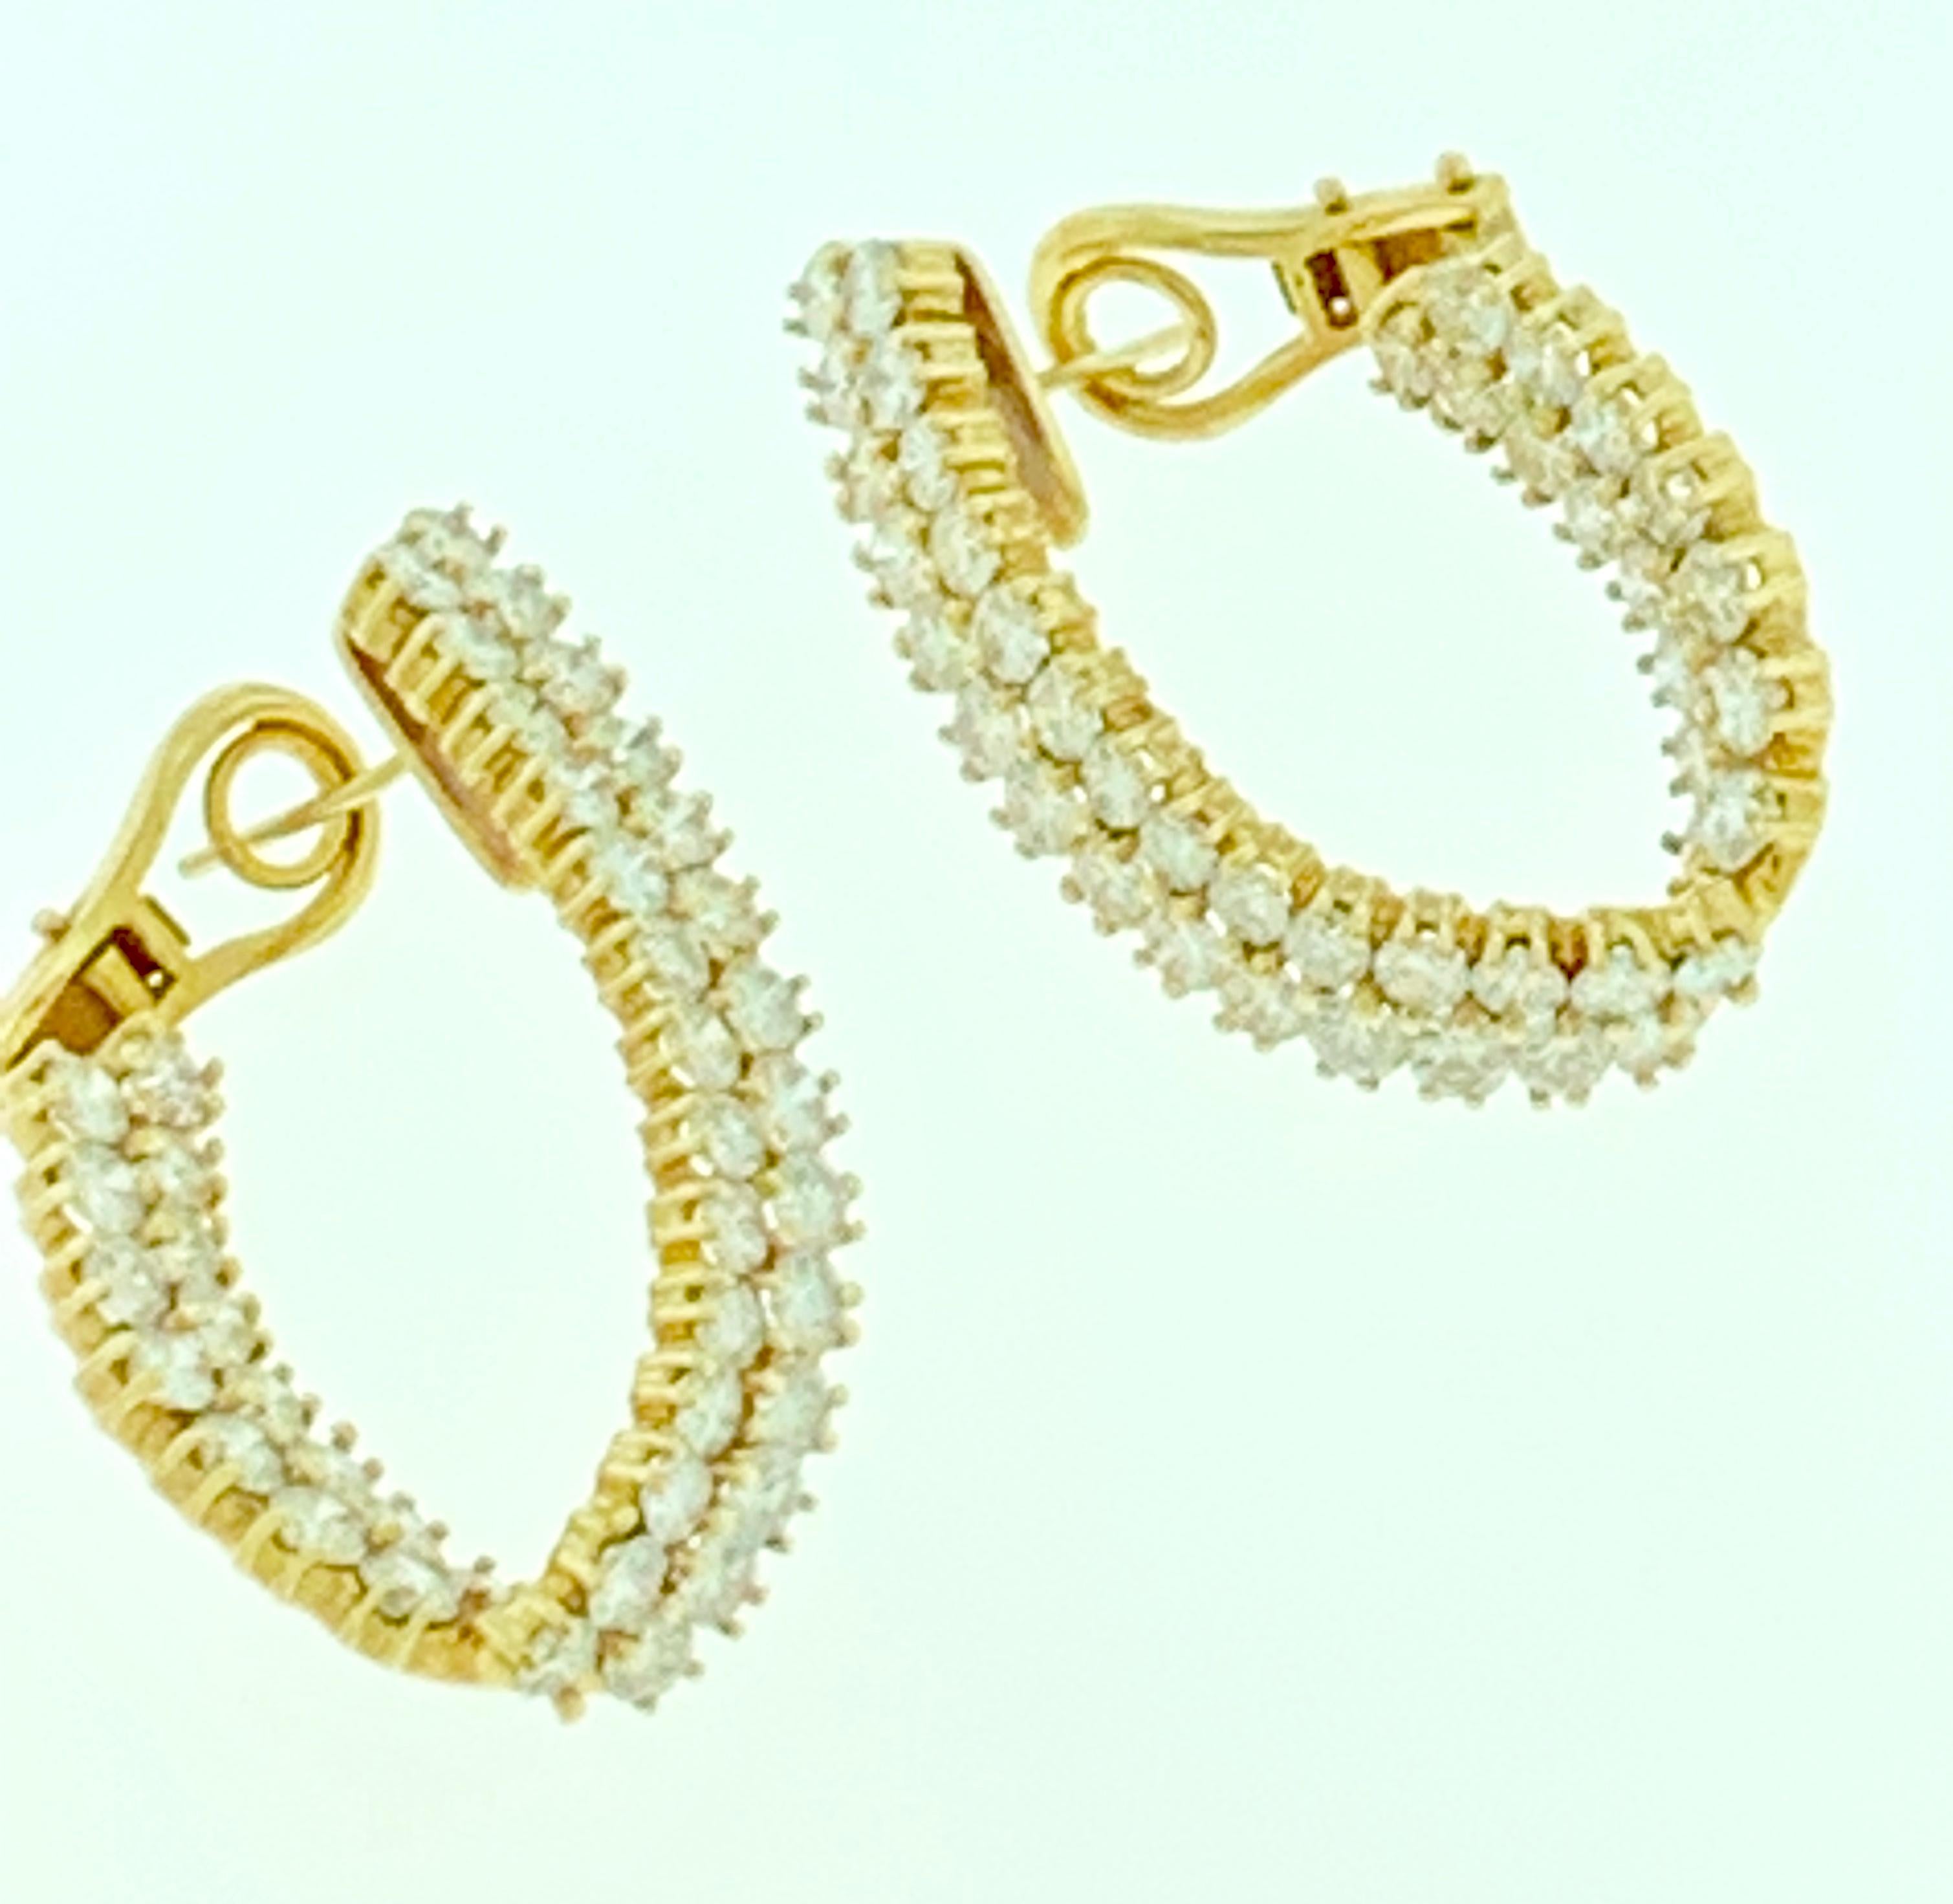 10 carat diamond hoop earrings